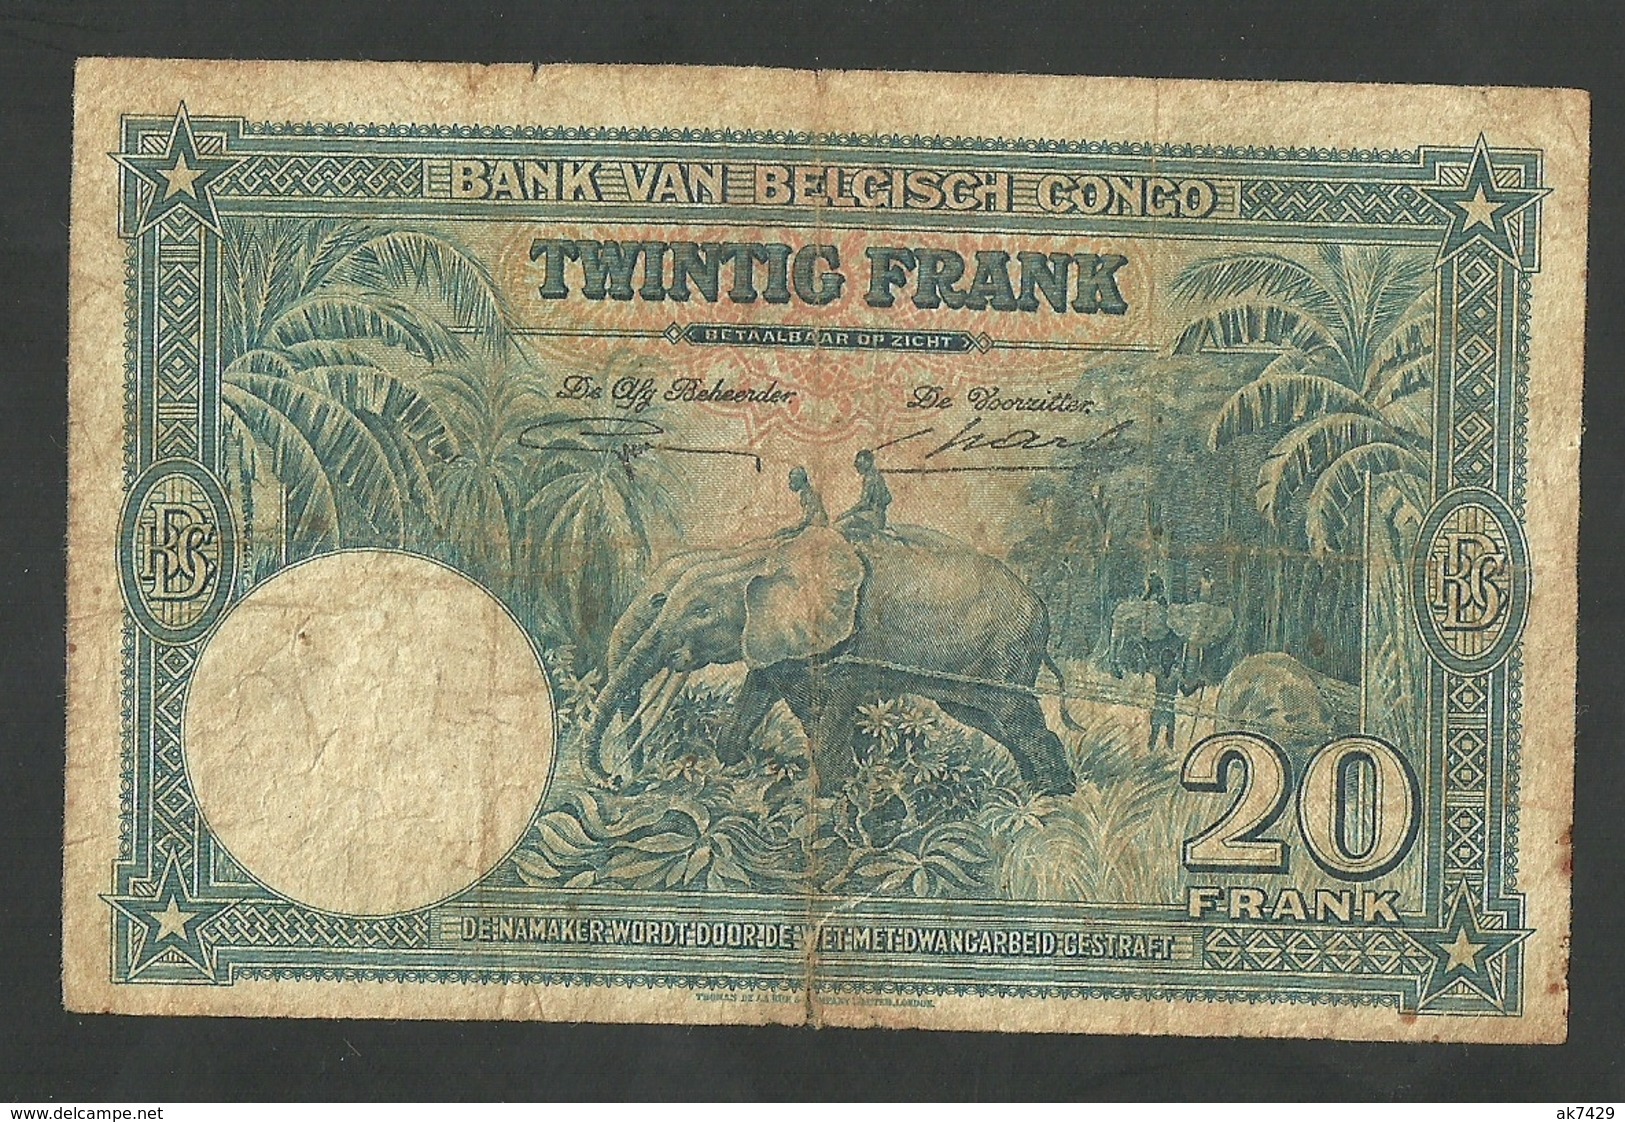 BELGIAN CONGO 20 FRANCS 1946 PICK # 15E CIRCULATED FINE  BANKNOTE RARE - Belgian Congo Bank